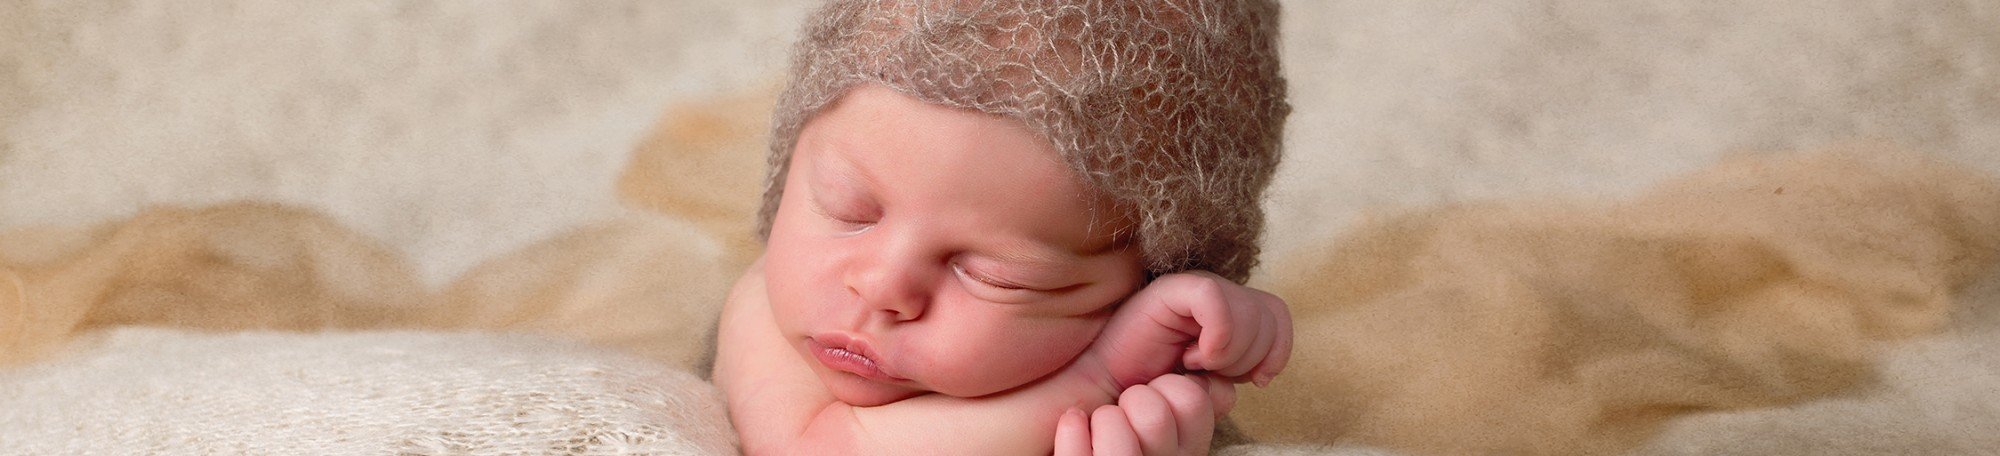 ClicKid's newborn :: Click Estudi, estudio de fotografía, fotografía social